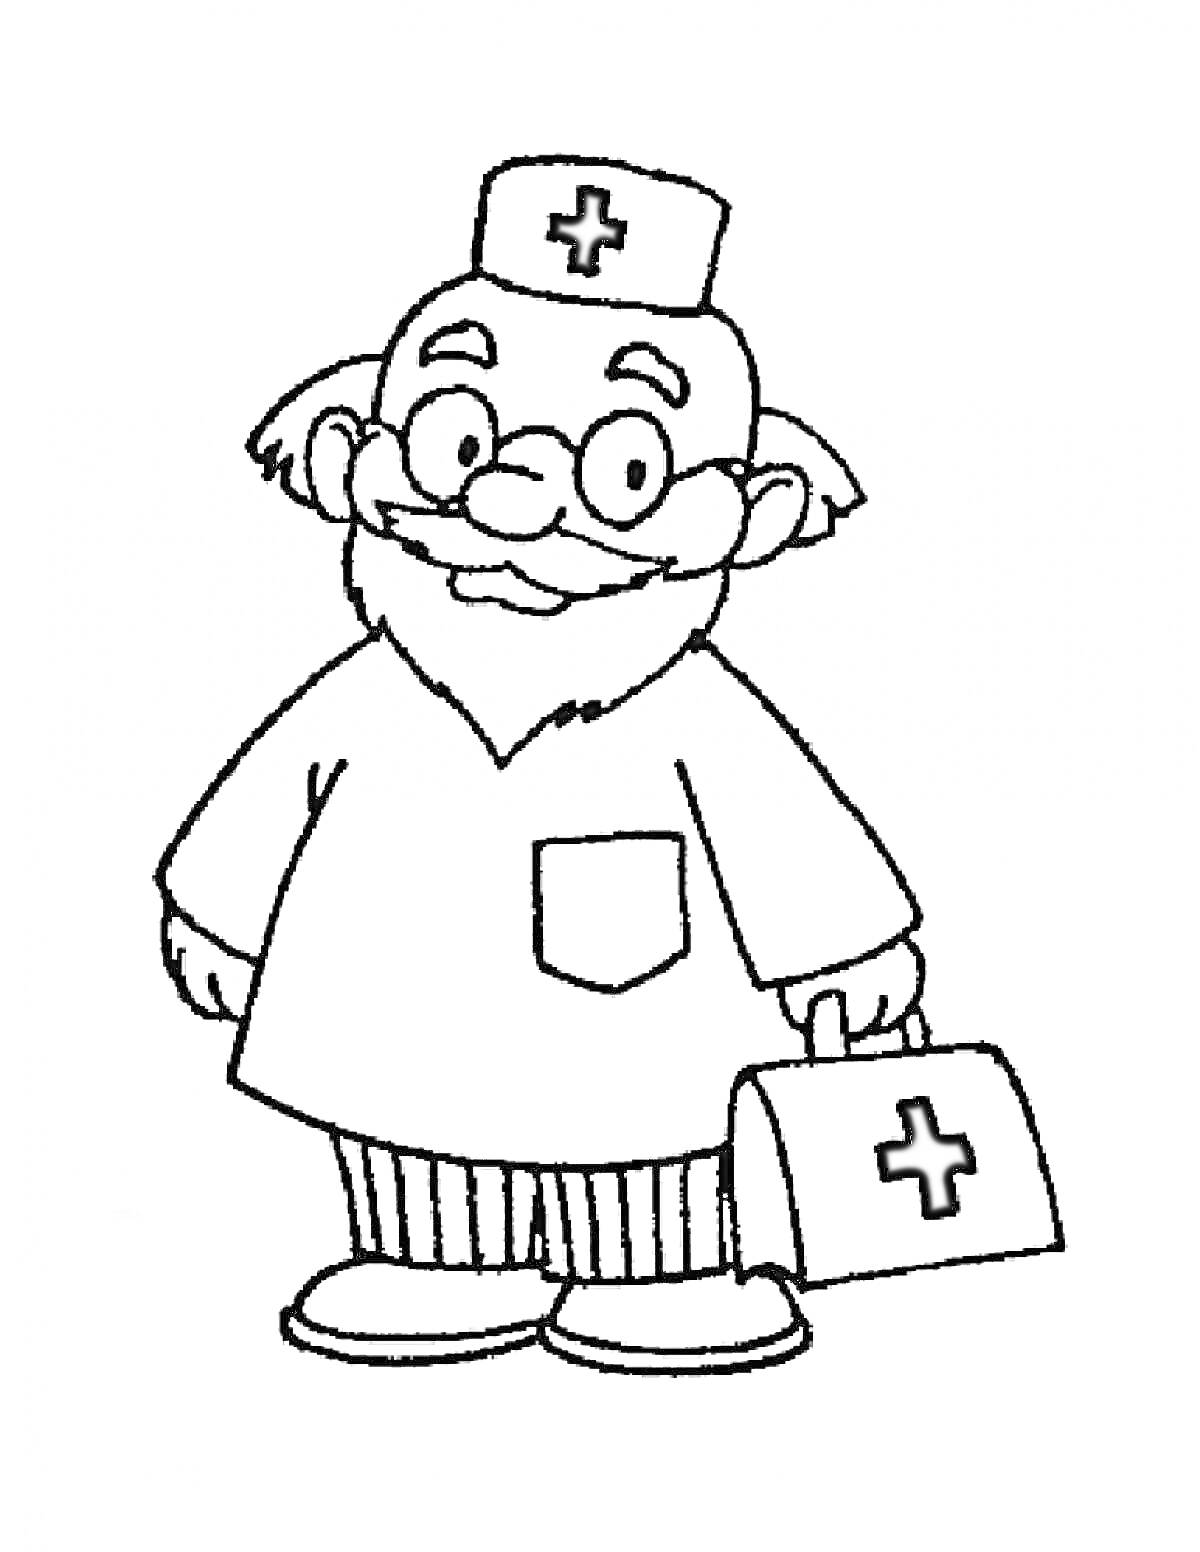 Раскраска Доктор Айболит с чемоданом и медицинской шапочкой